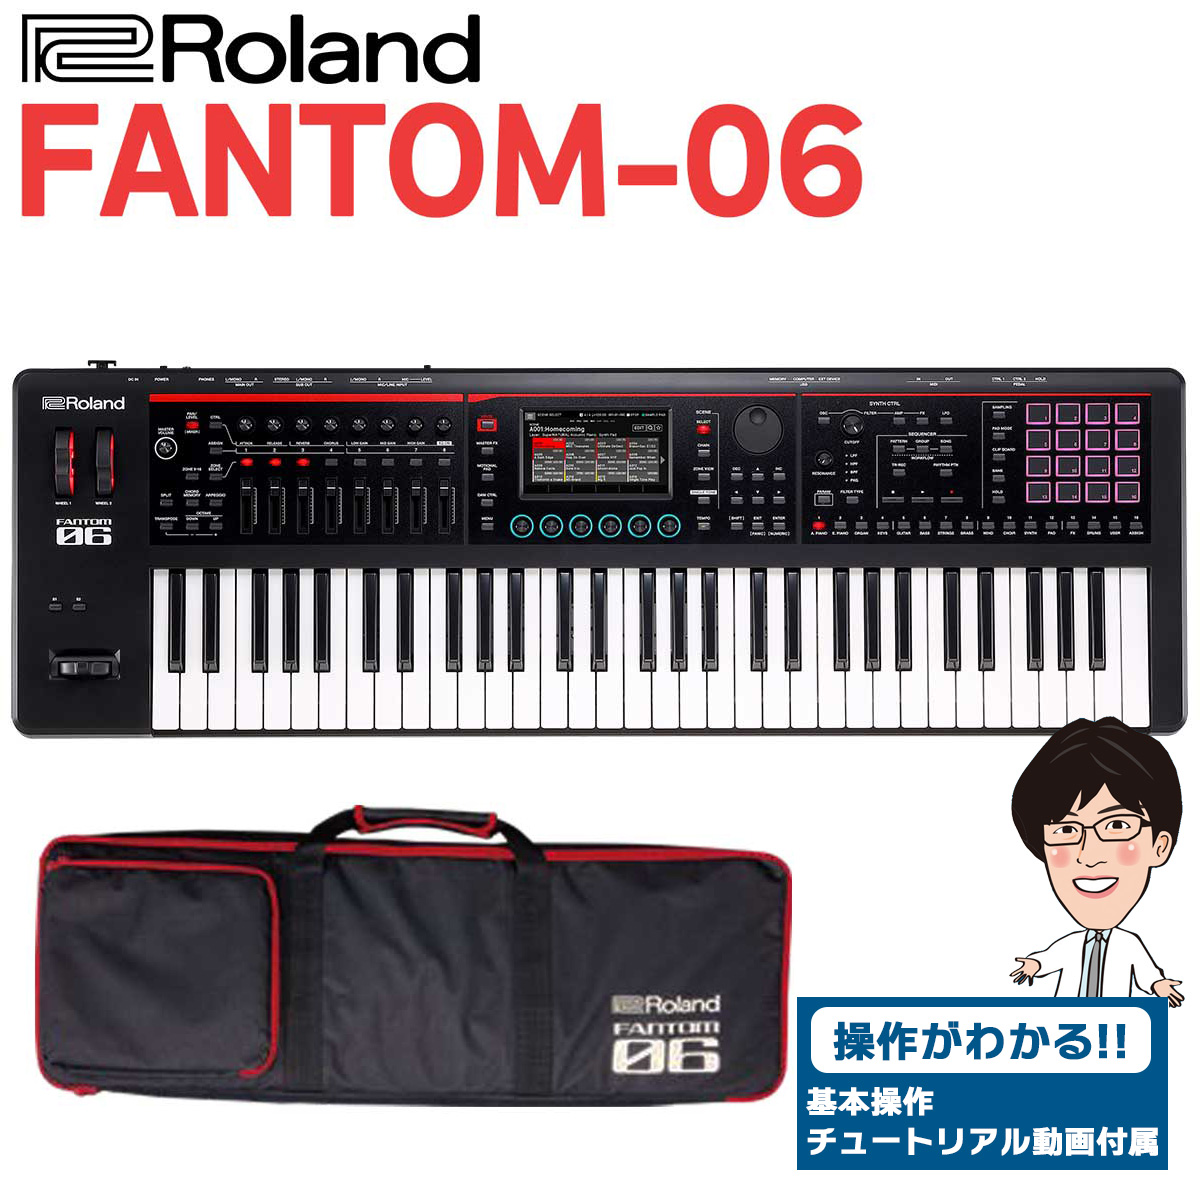 Roland Fantom G6 シンセサイザー - 鍵盤楽器